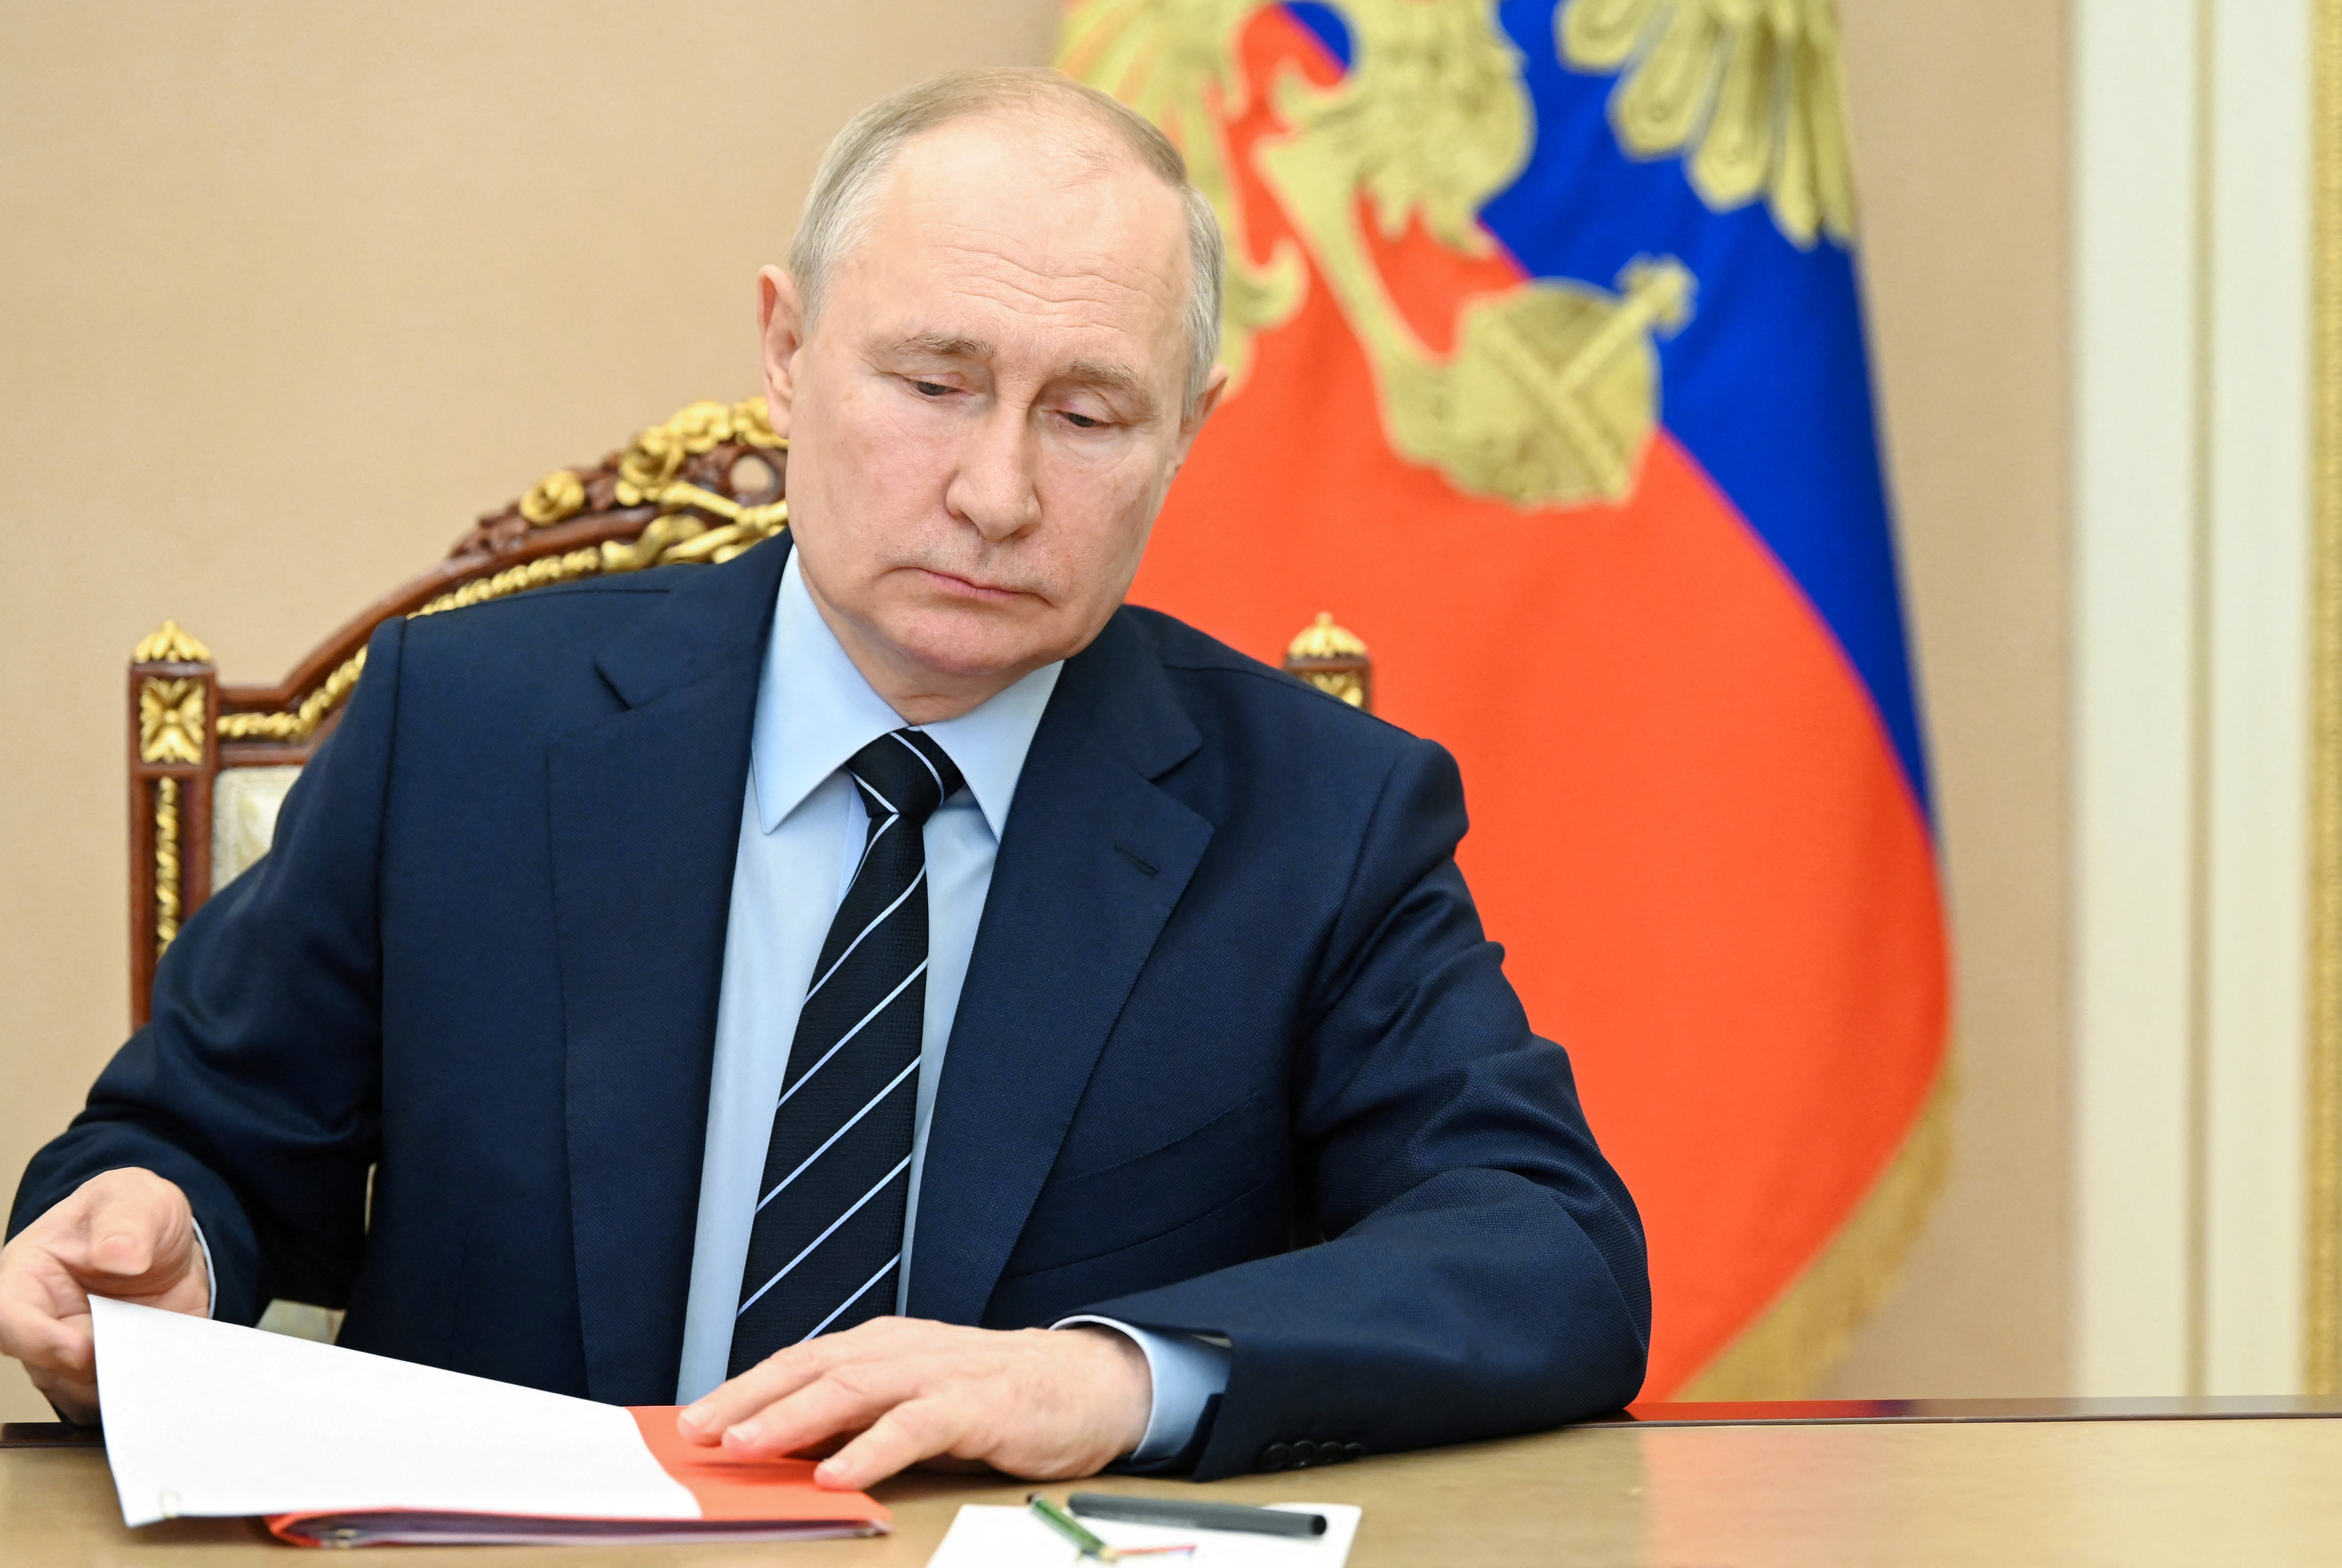 El presidente ruso Vladimir Putin preside una reunión con miembros del Consejo de Seguridad en Moscú